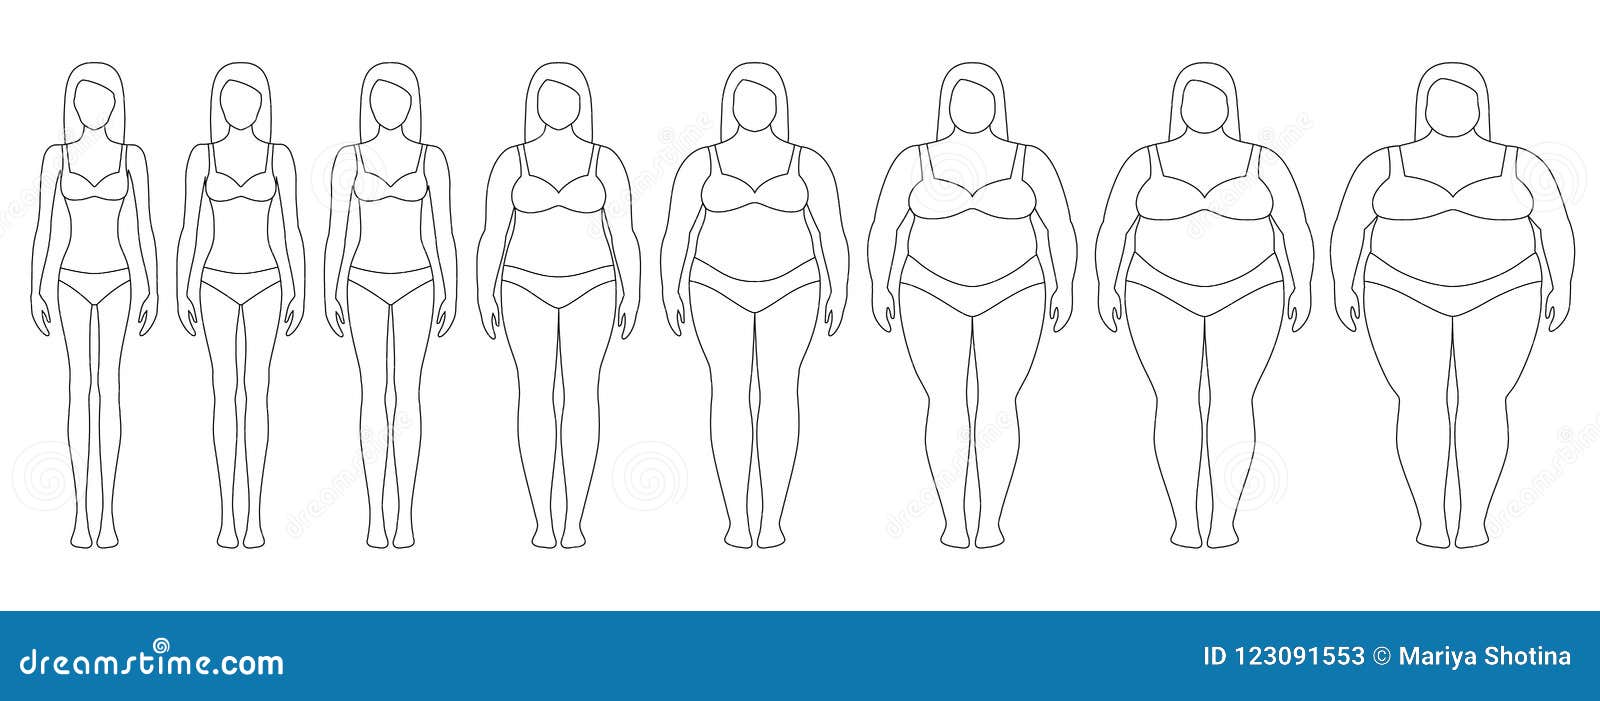 Vector Illustration von Frauenkonturen mit unterschiedlichem Gewicht von der Magersucht zu extrem beleibtem Body-Maß-Index, Gewichtsverlustkonzept